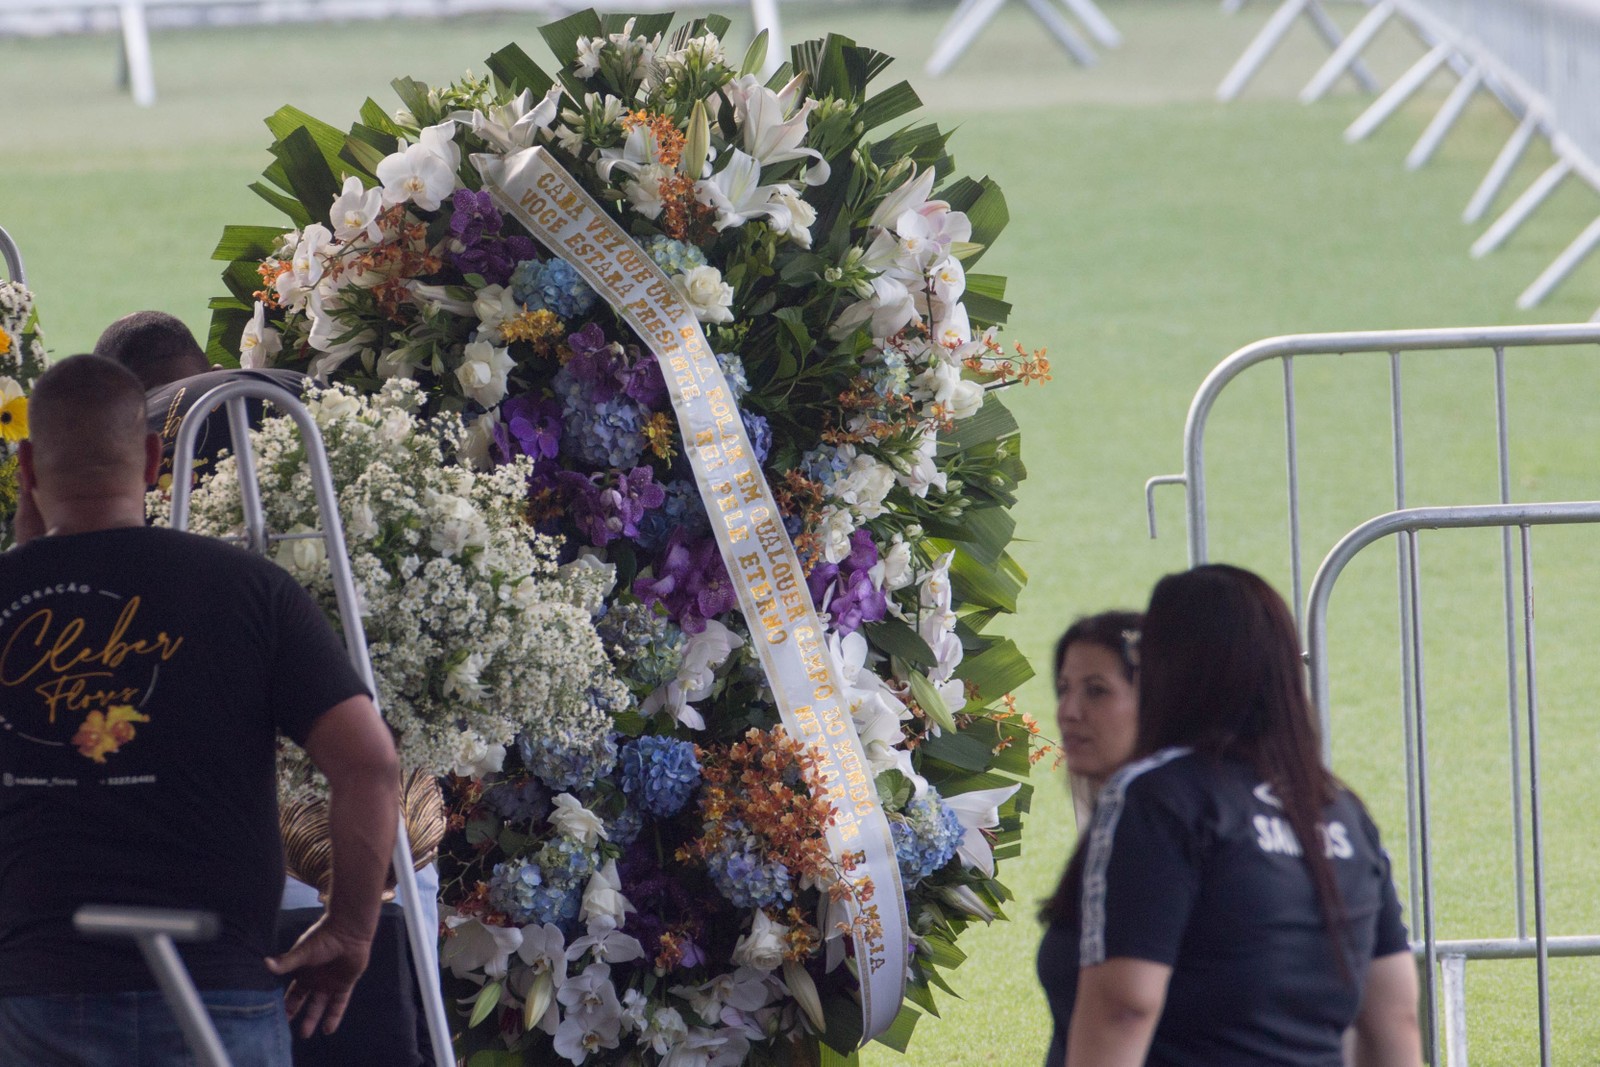  A coroa de flores enviada por Neymar para o velório do Pelé — Foto: Edilson Dantas/O Globo